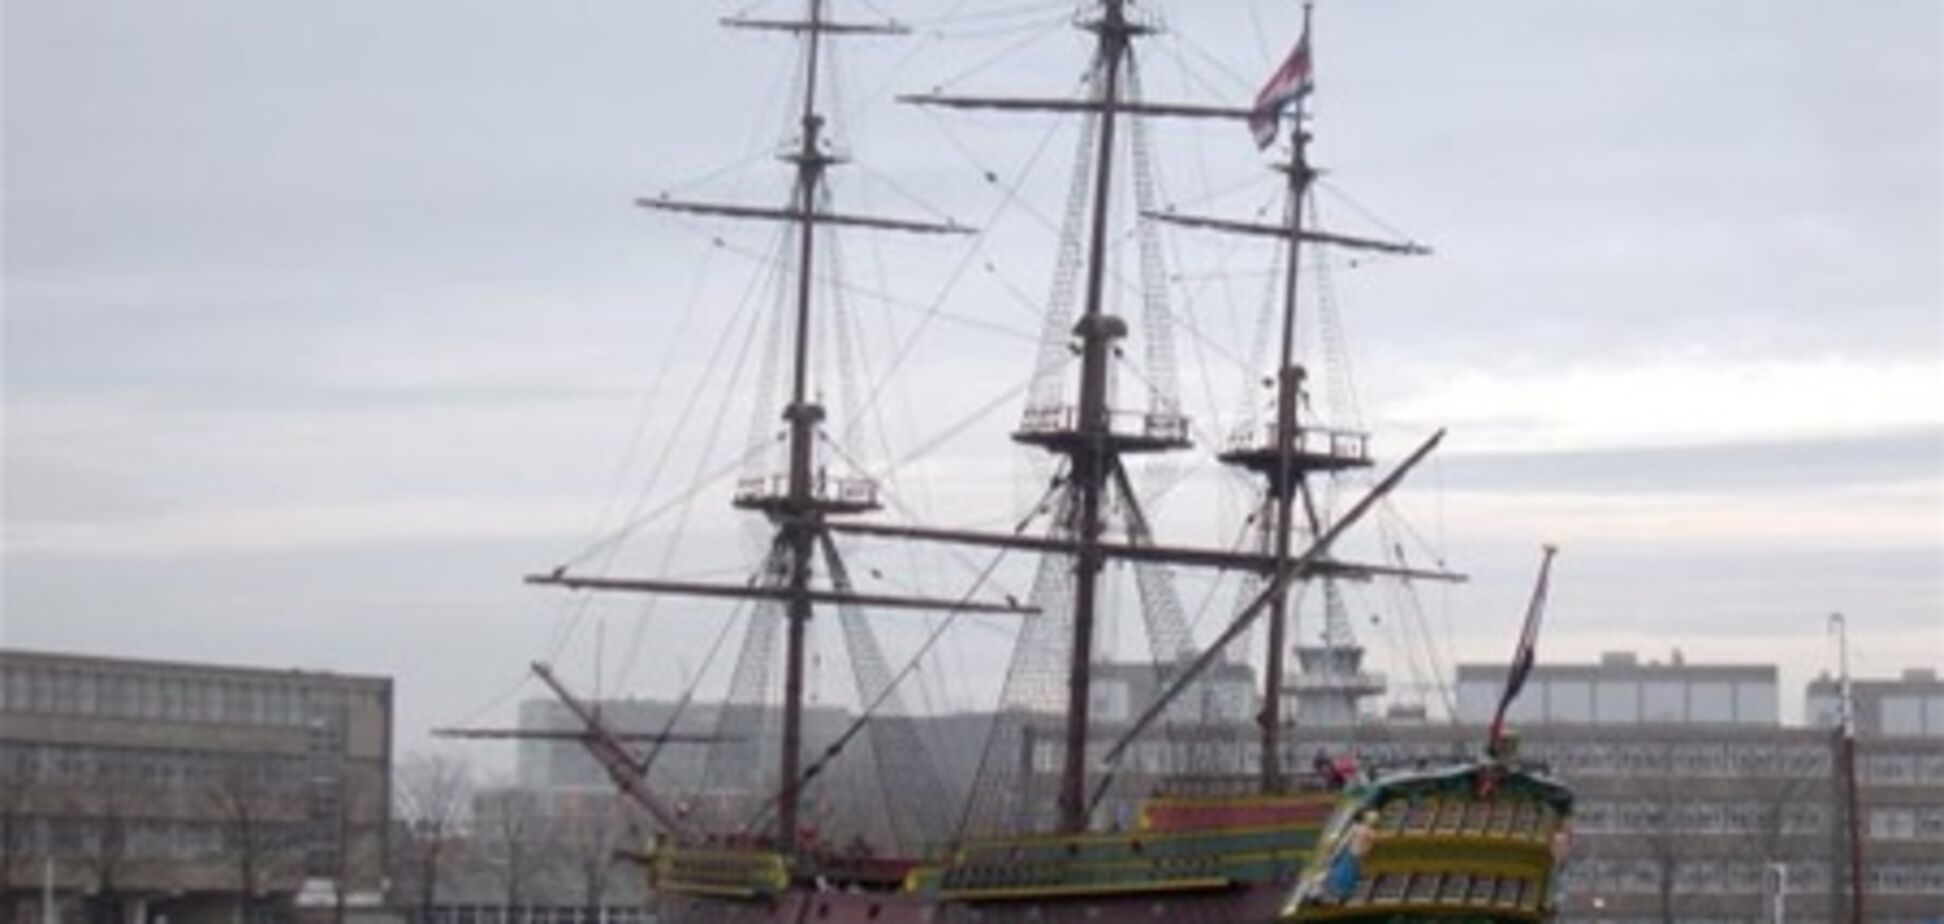 Музей старинных судов открывается в Великобритании